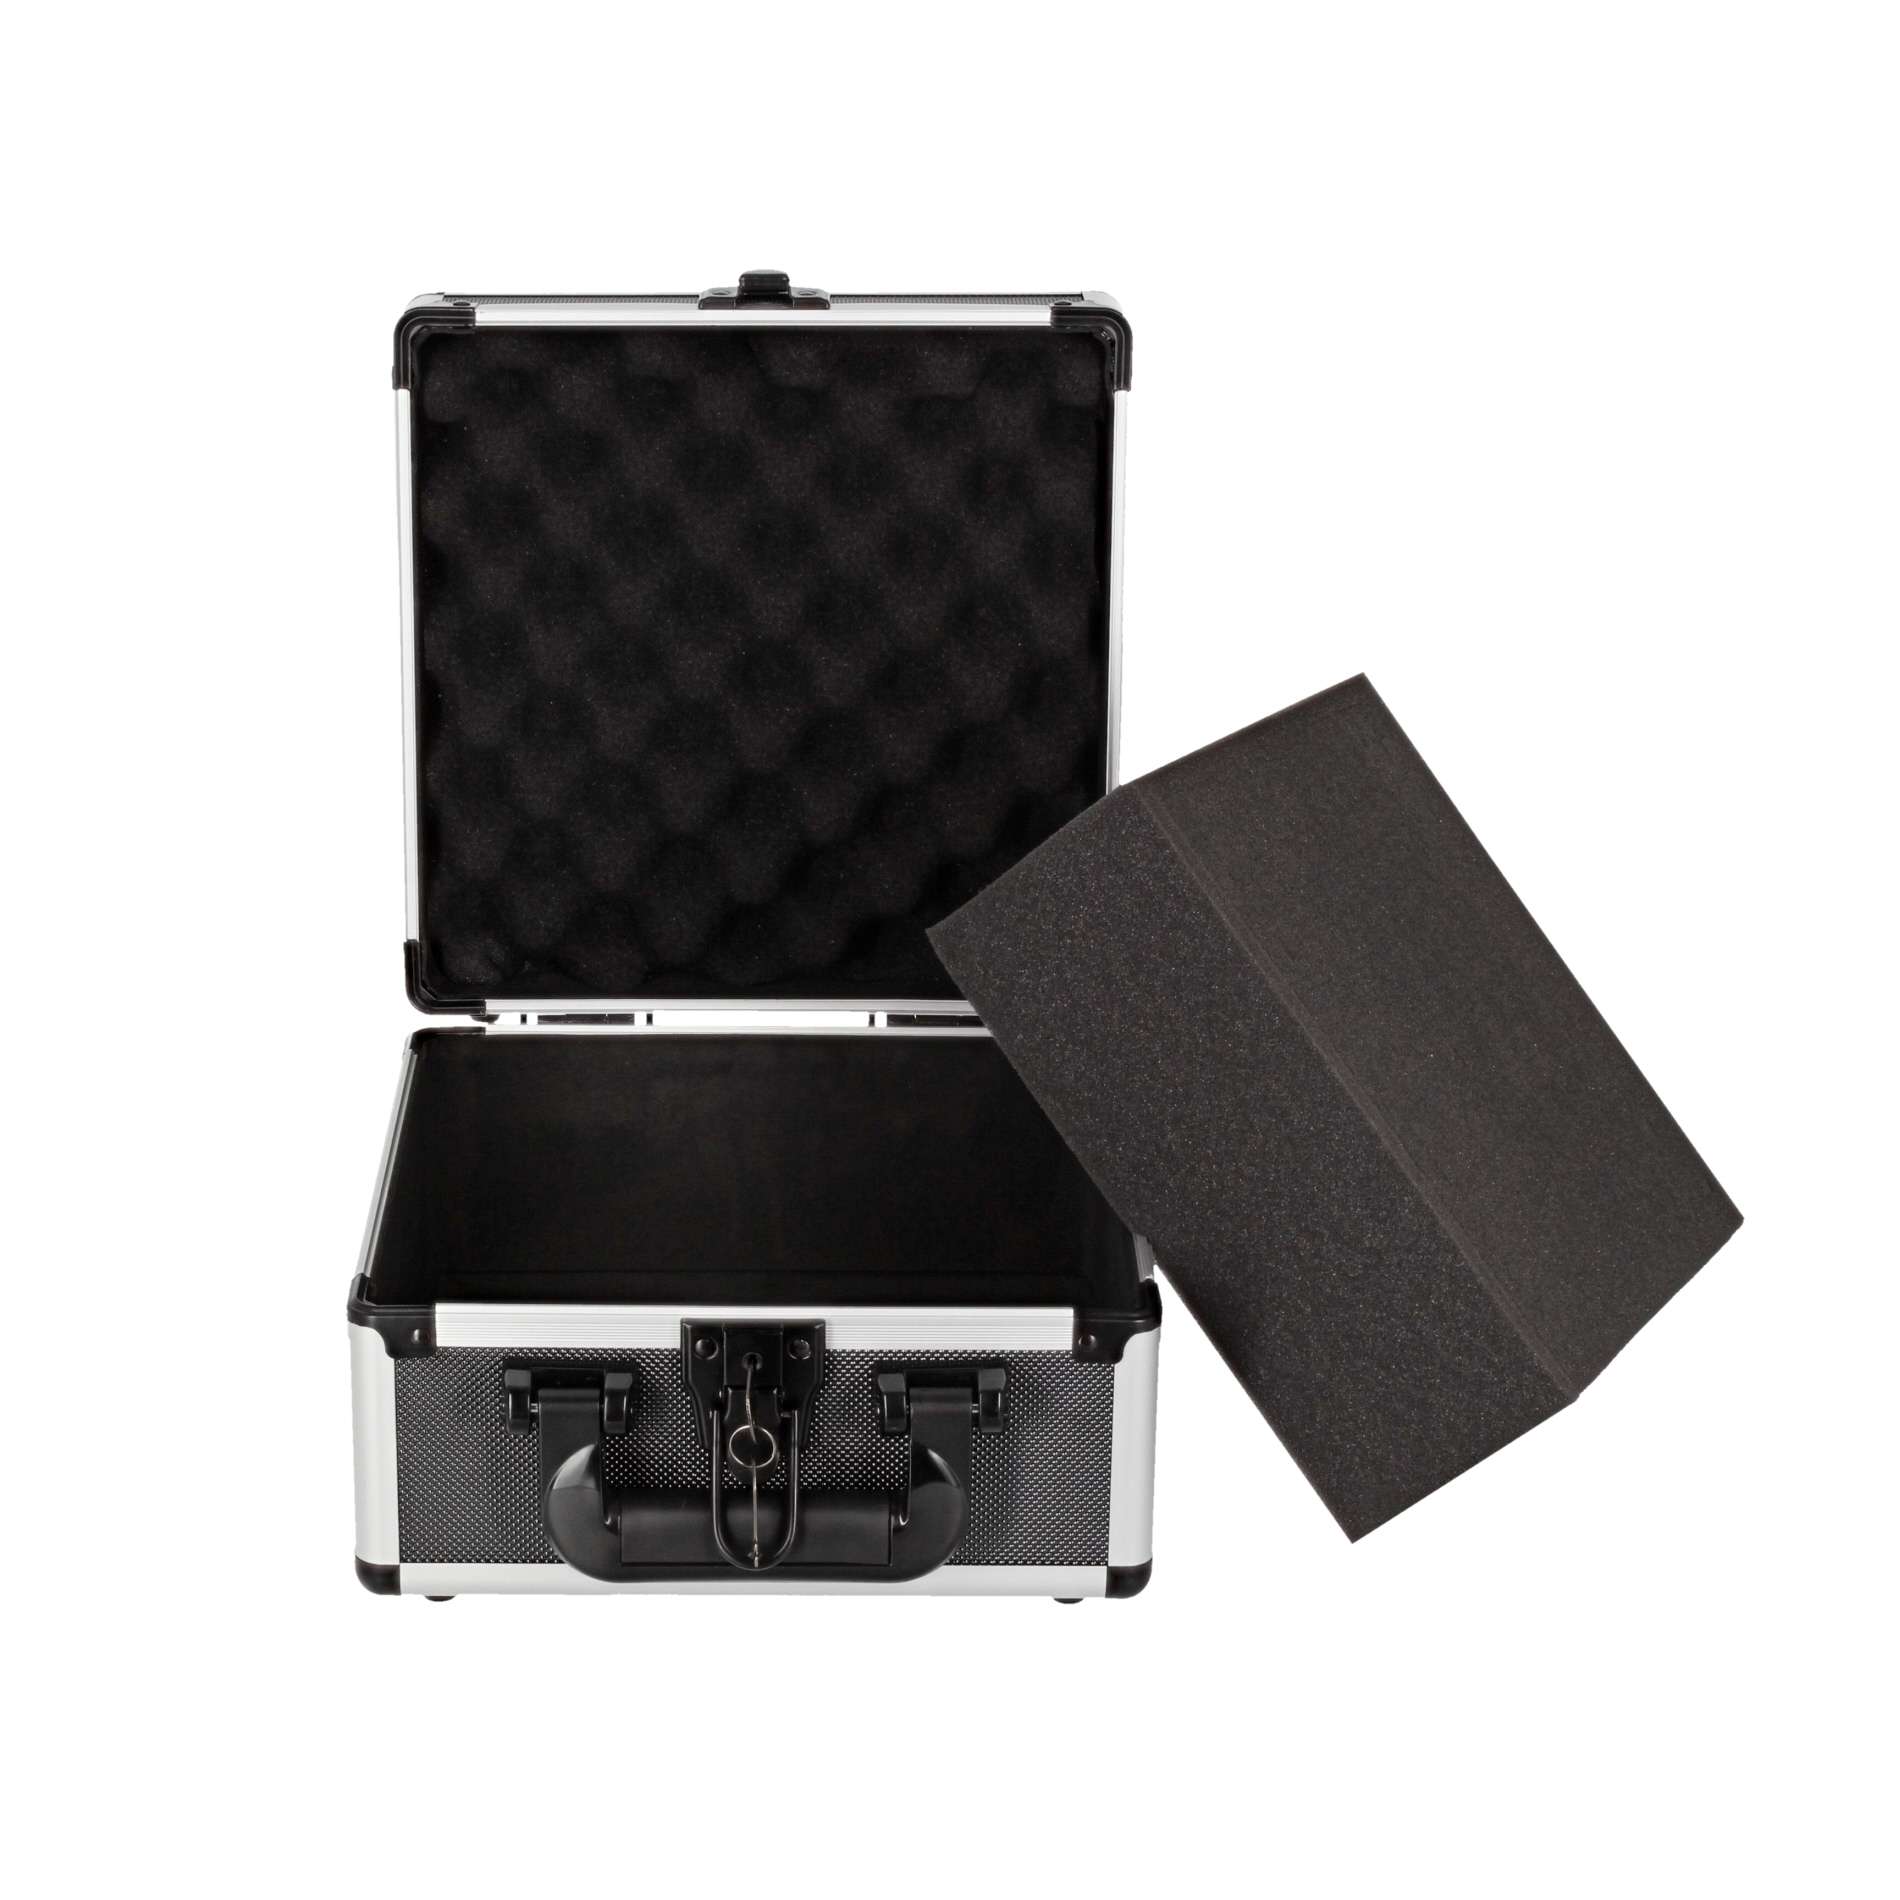 Power Acoustics Valise De Transport Pour Mixeur - Cases for mixing desk - Variation 3